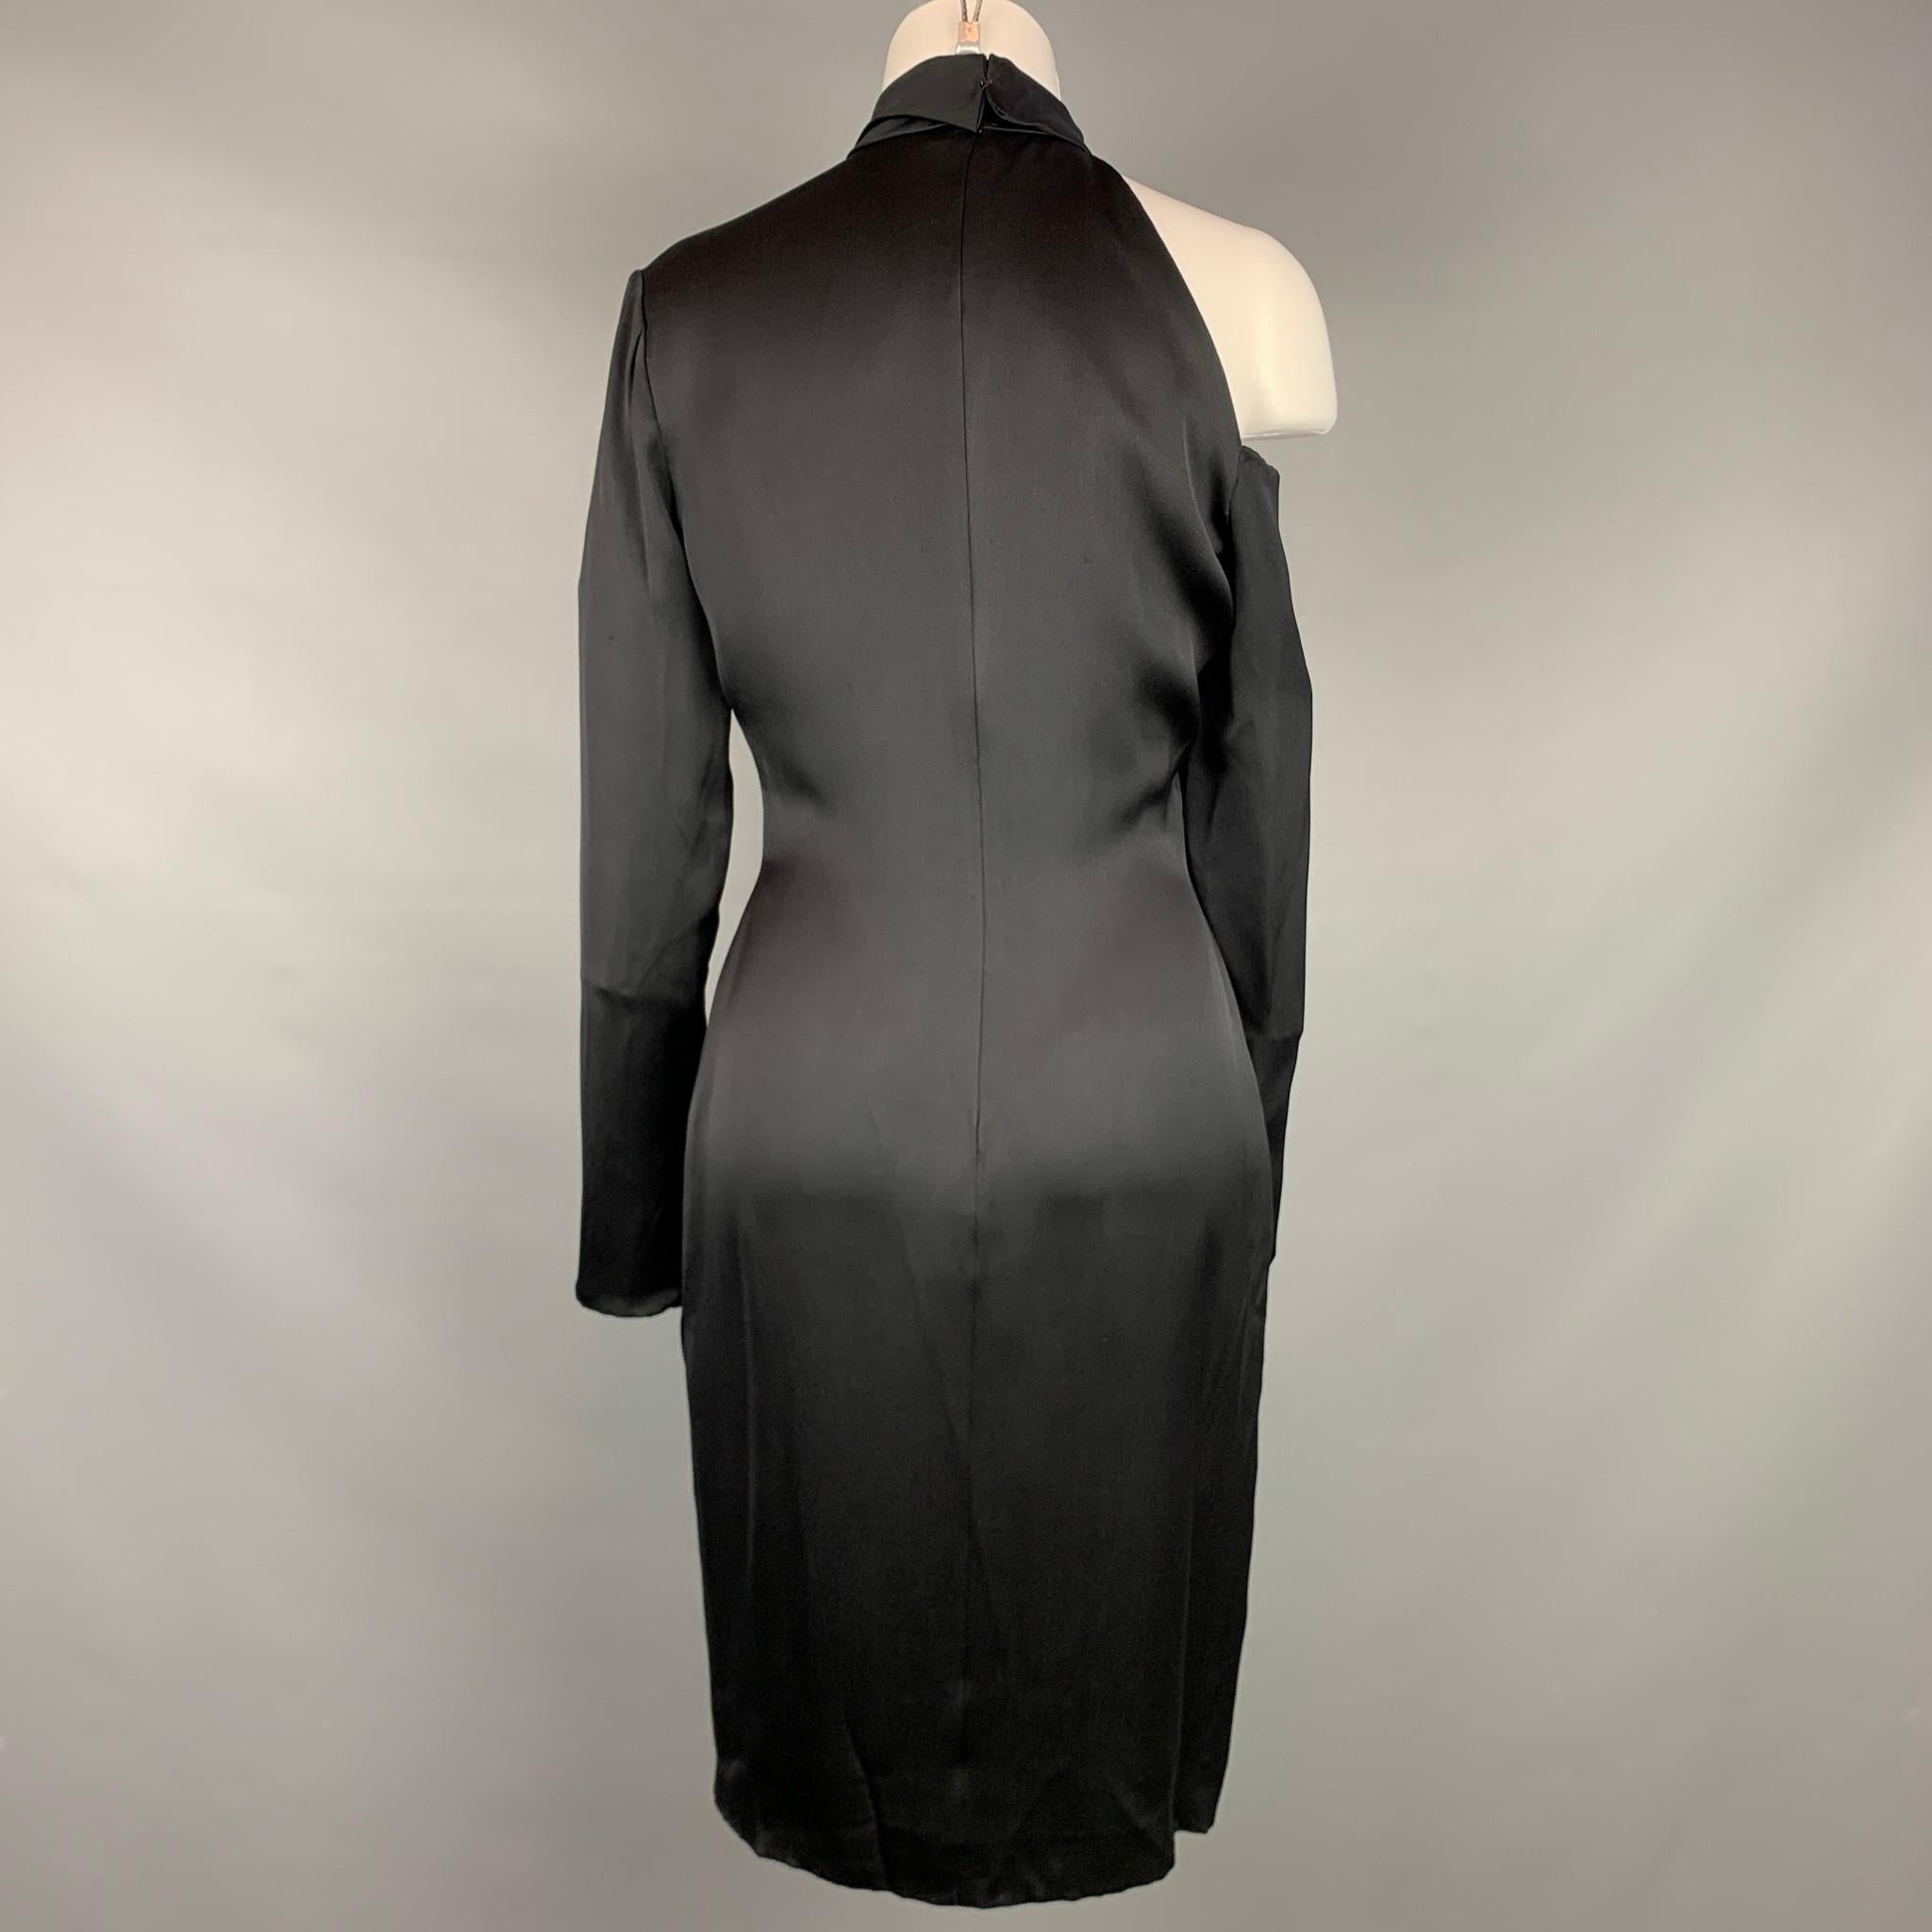 Women's BILL BLASS Size M Black Silk Shoulder Cut Out Cocktail Dress